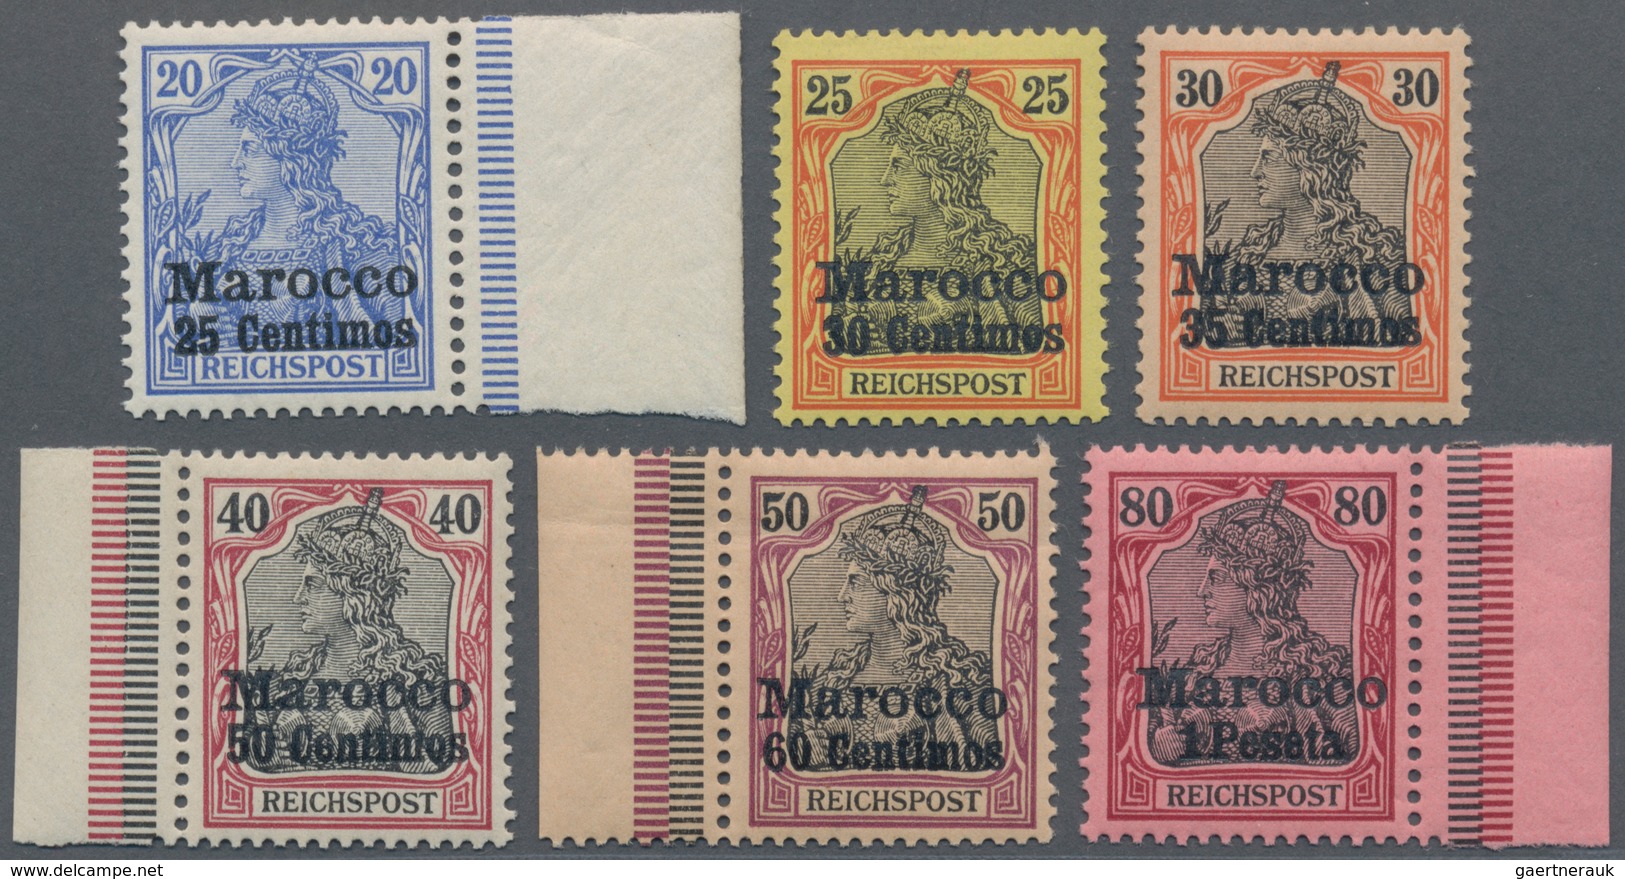 Deutsche Post In Marokko: 1903, Germania 20 Pf. Bis 80 Pf. Mit Fettem Aufdruck "Marocco", Sechs Nich - Morocco (offices)